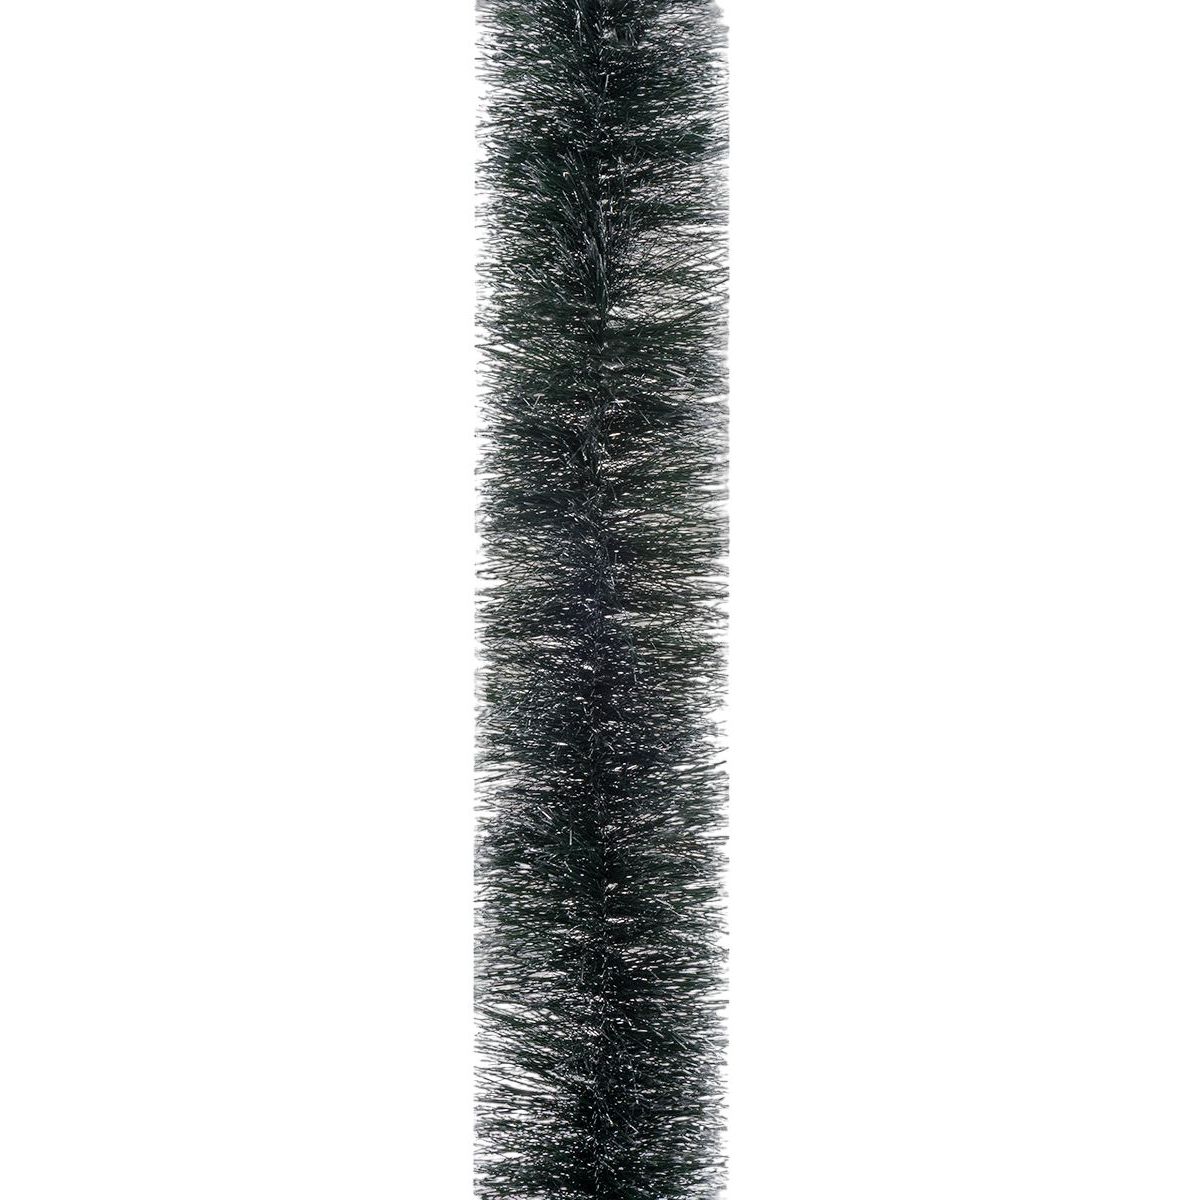 Мишура Novogod'ko 7.5 см 2 м зеленая с белыми кончиками (980423) - фото 1